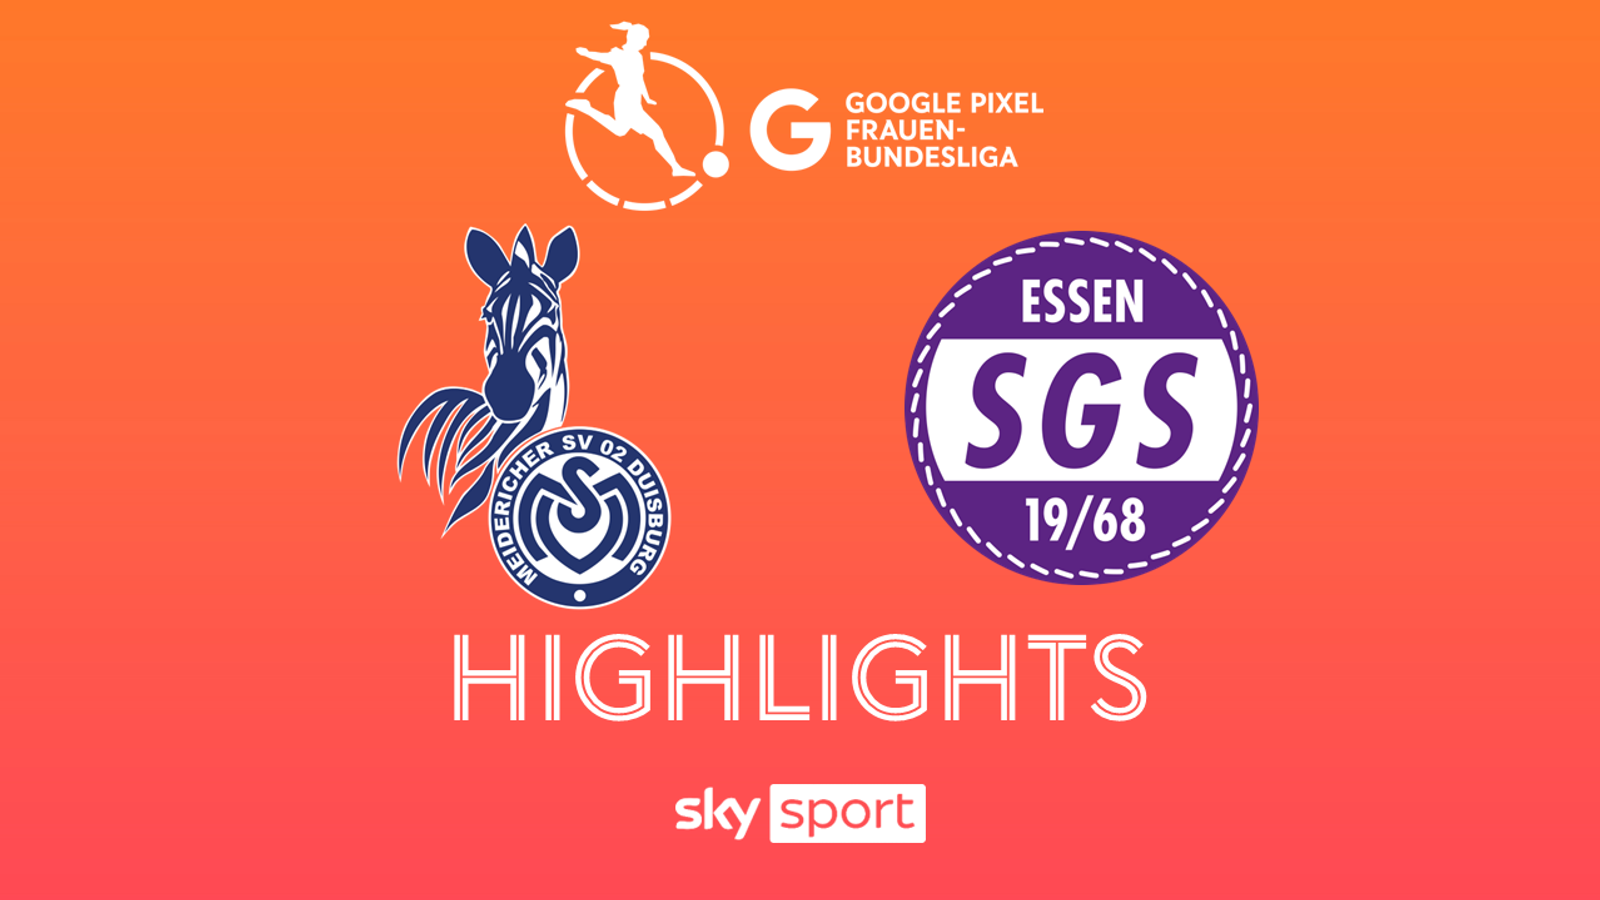 Fauen-Bundesliga MSV Duisburg – SGS Essen